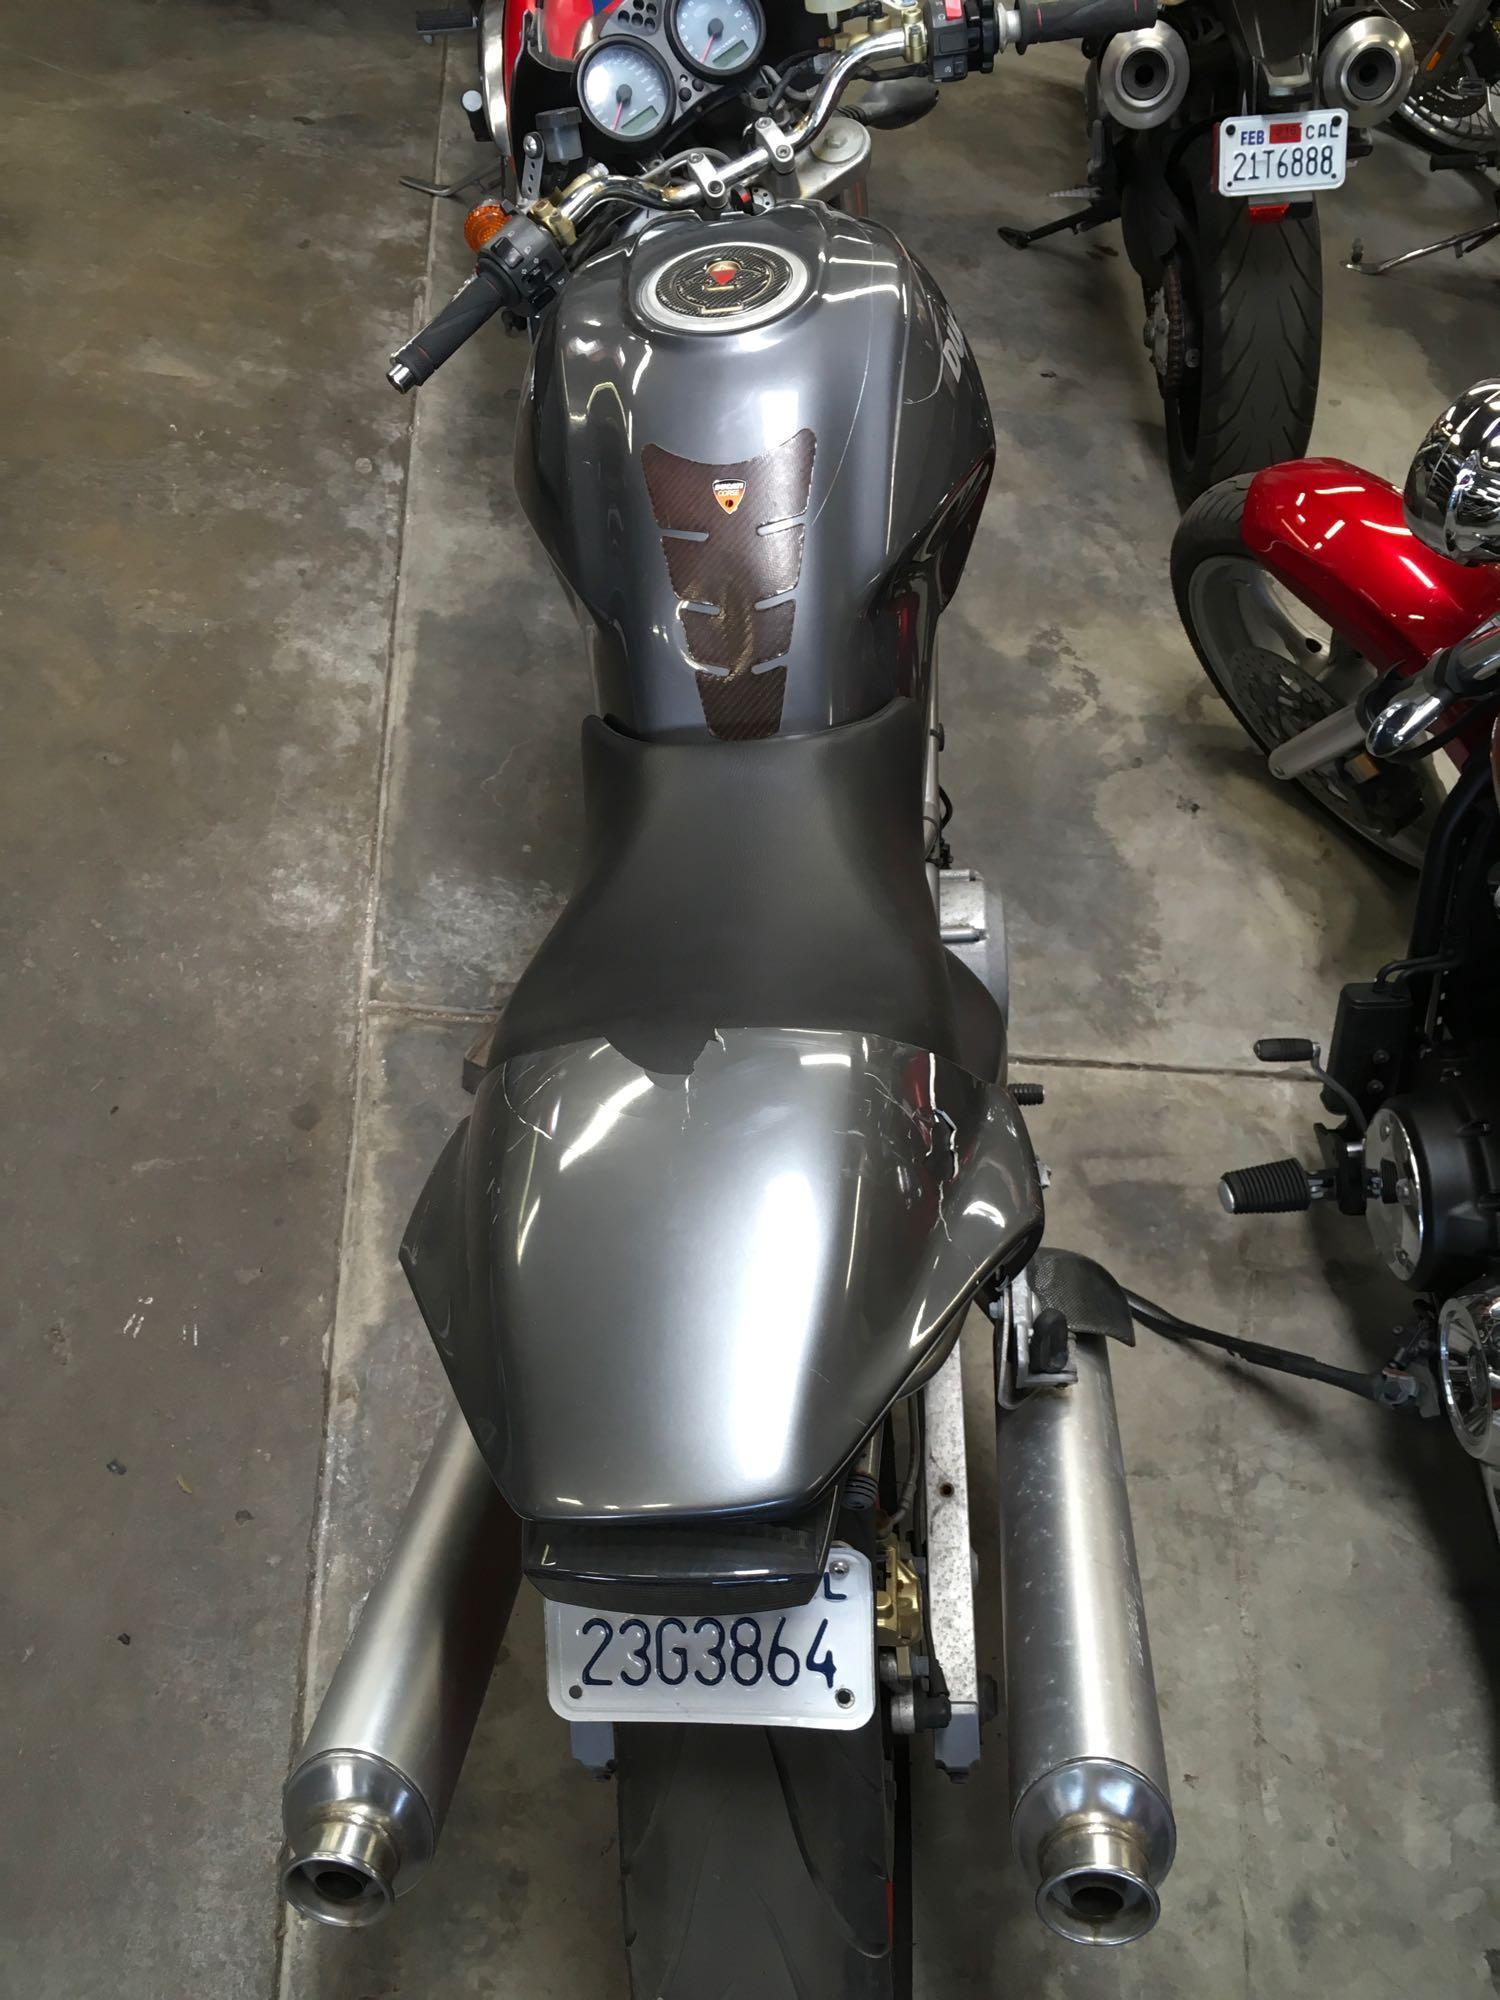 2002 Ducati M750 Motorcycle